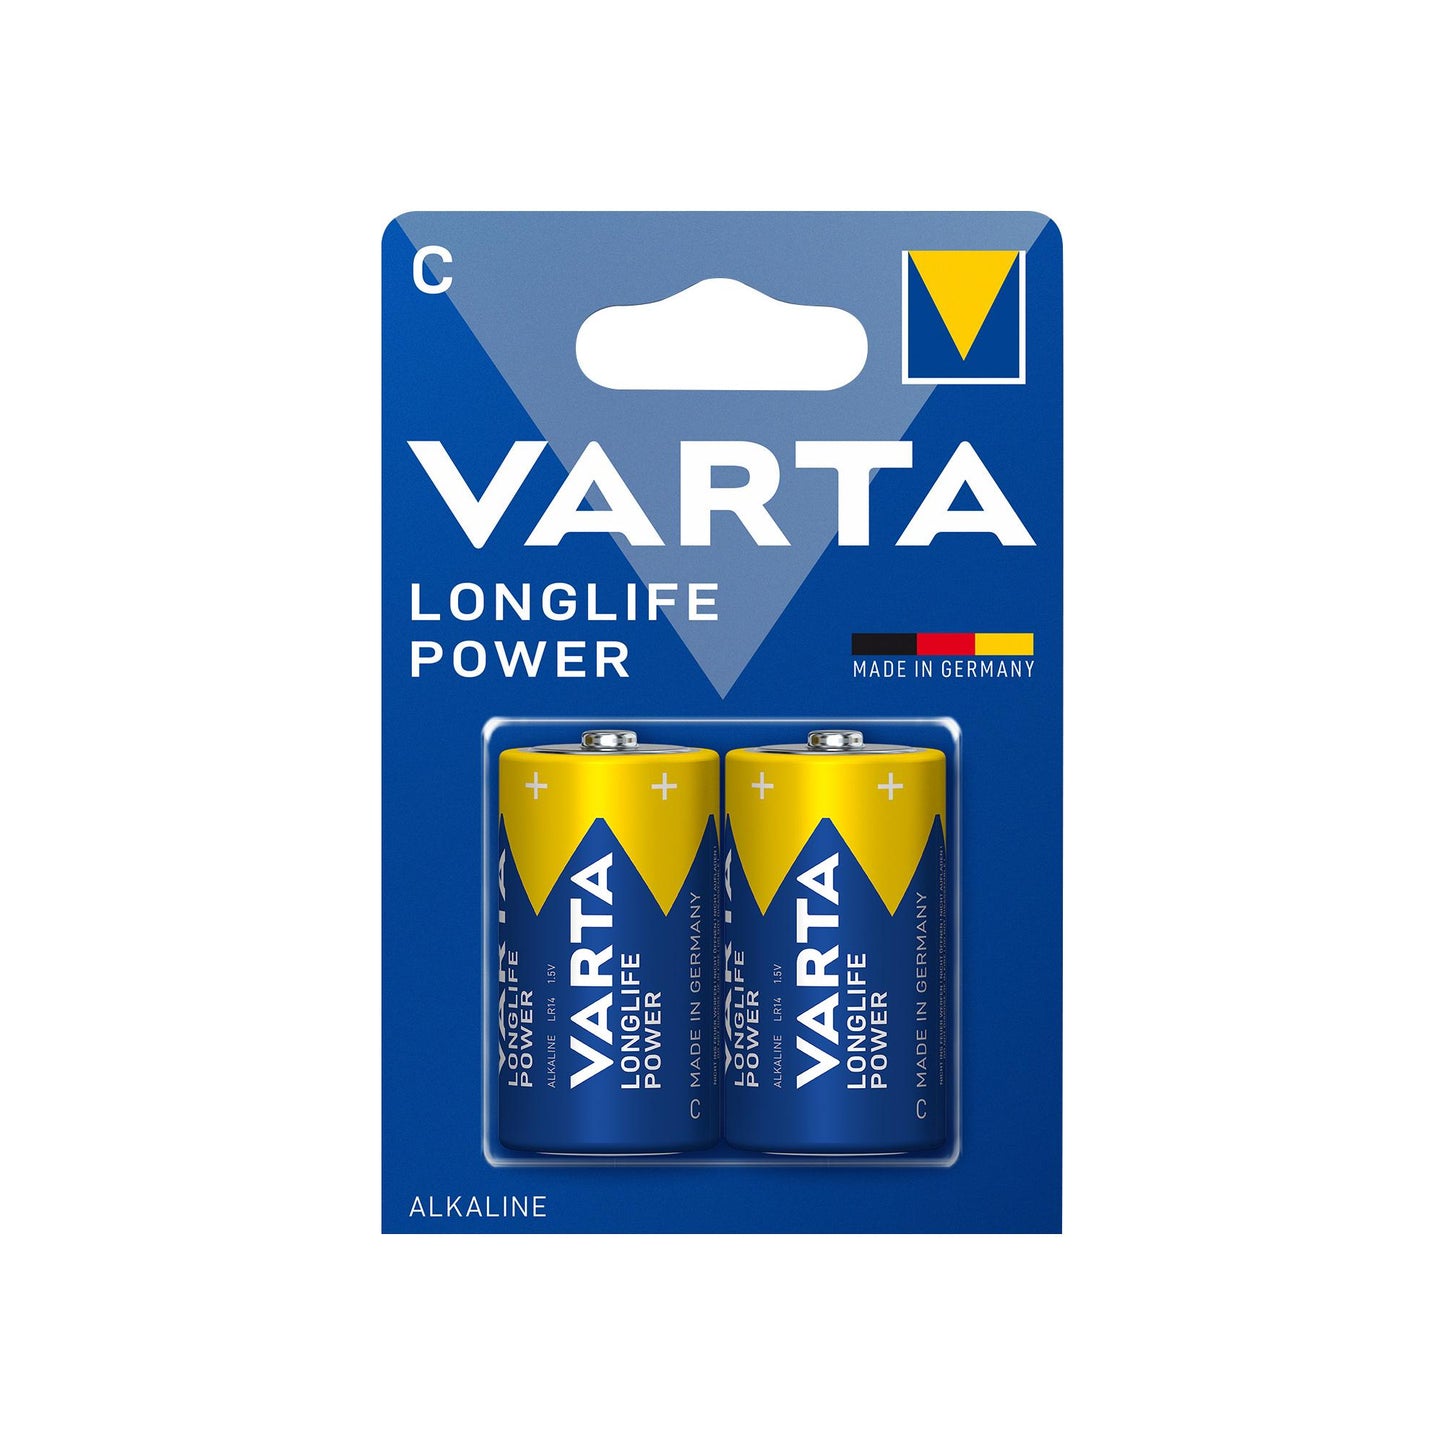 VARTA Batterie Alkaline Baby C LR14, 1.5V Longlife Power, Retail Blister (2-Pack)